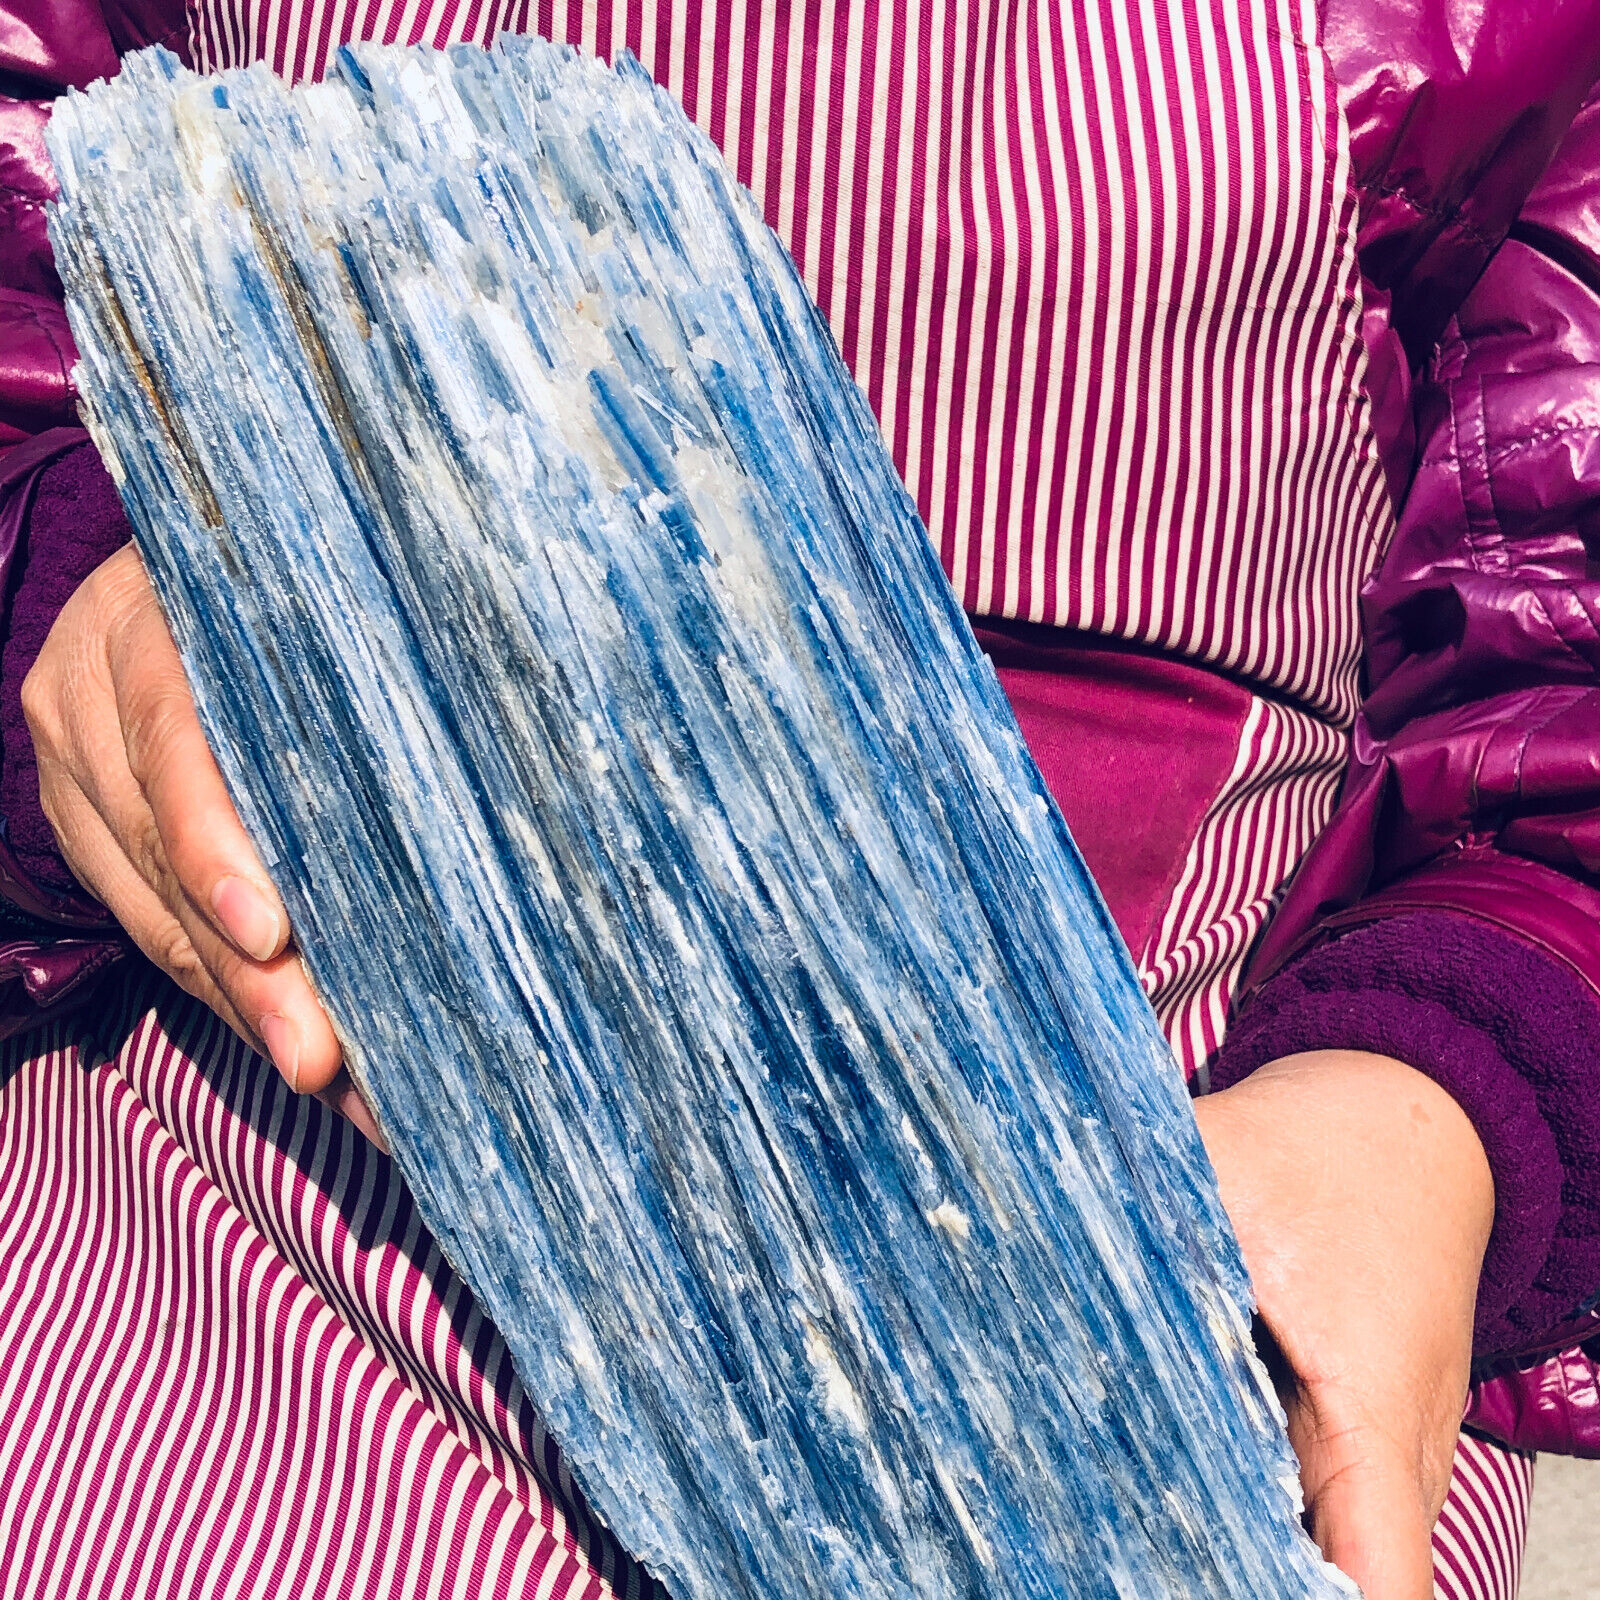 16.98LB Natural Blue Crystal Kyanite Rough Gem mineral Specimen Healing